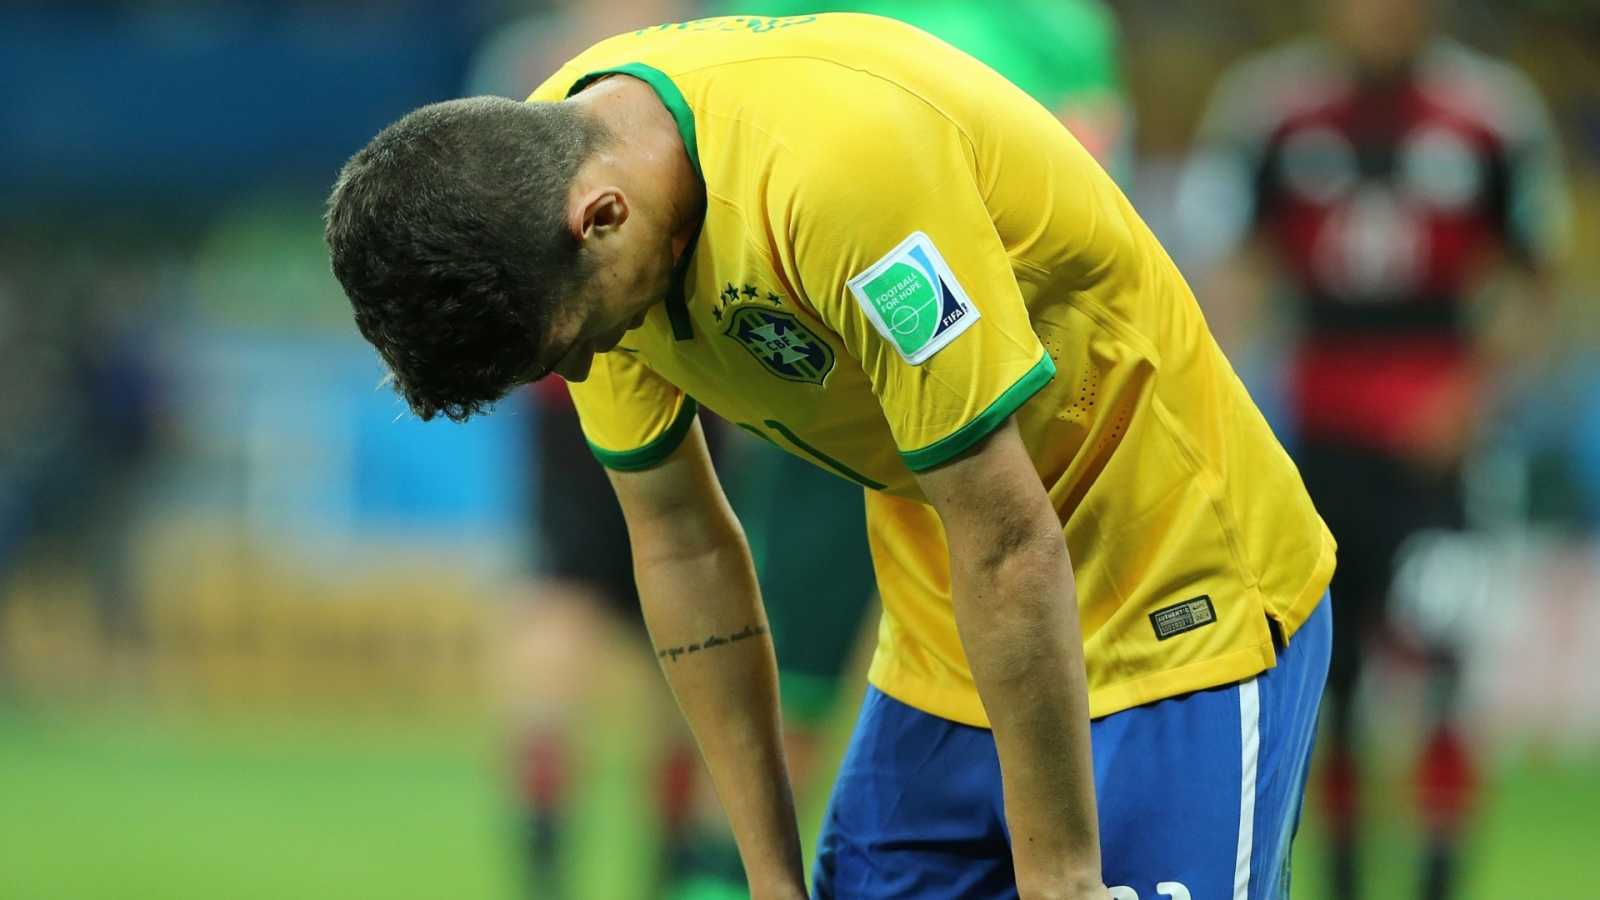 entretenimento | Copa 2014 | Brasil perdeu a Copa 2014 | Brasil e Alemanha | jogos da Copa 2014 | falta de respeito pelo Brasil | etiqueta do futebol | patriotismo conveniente